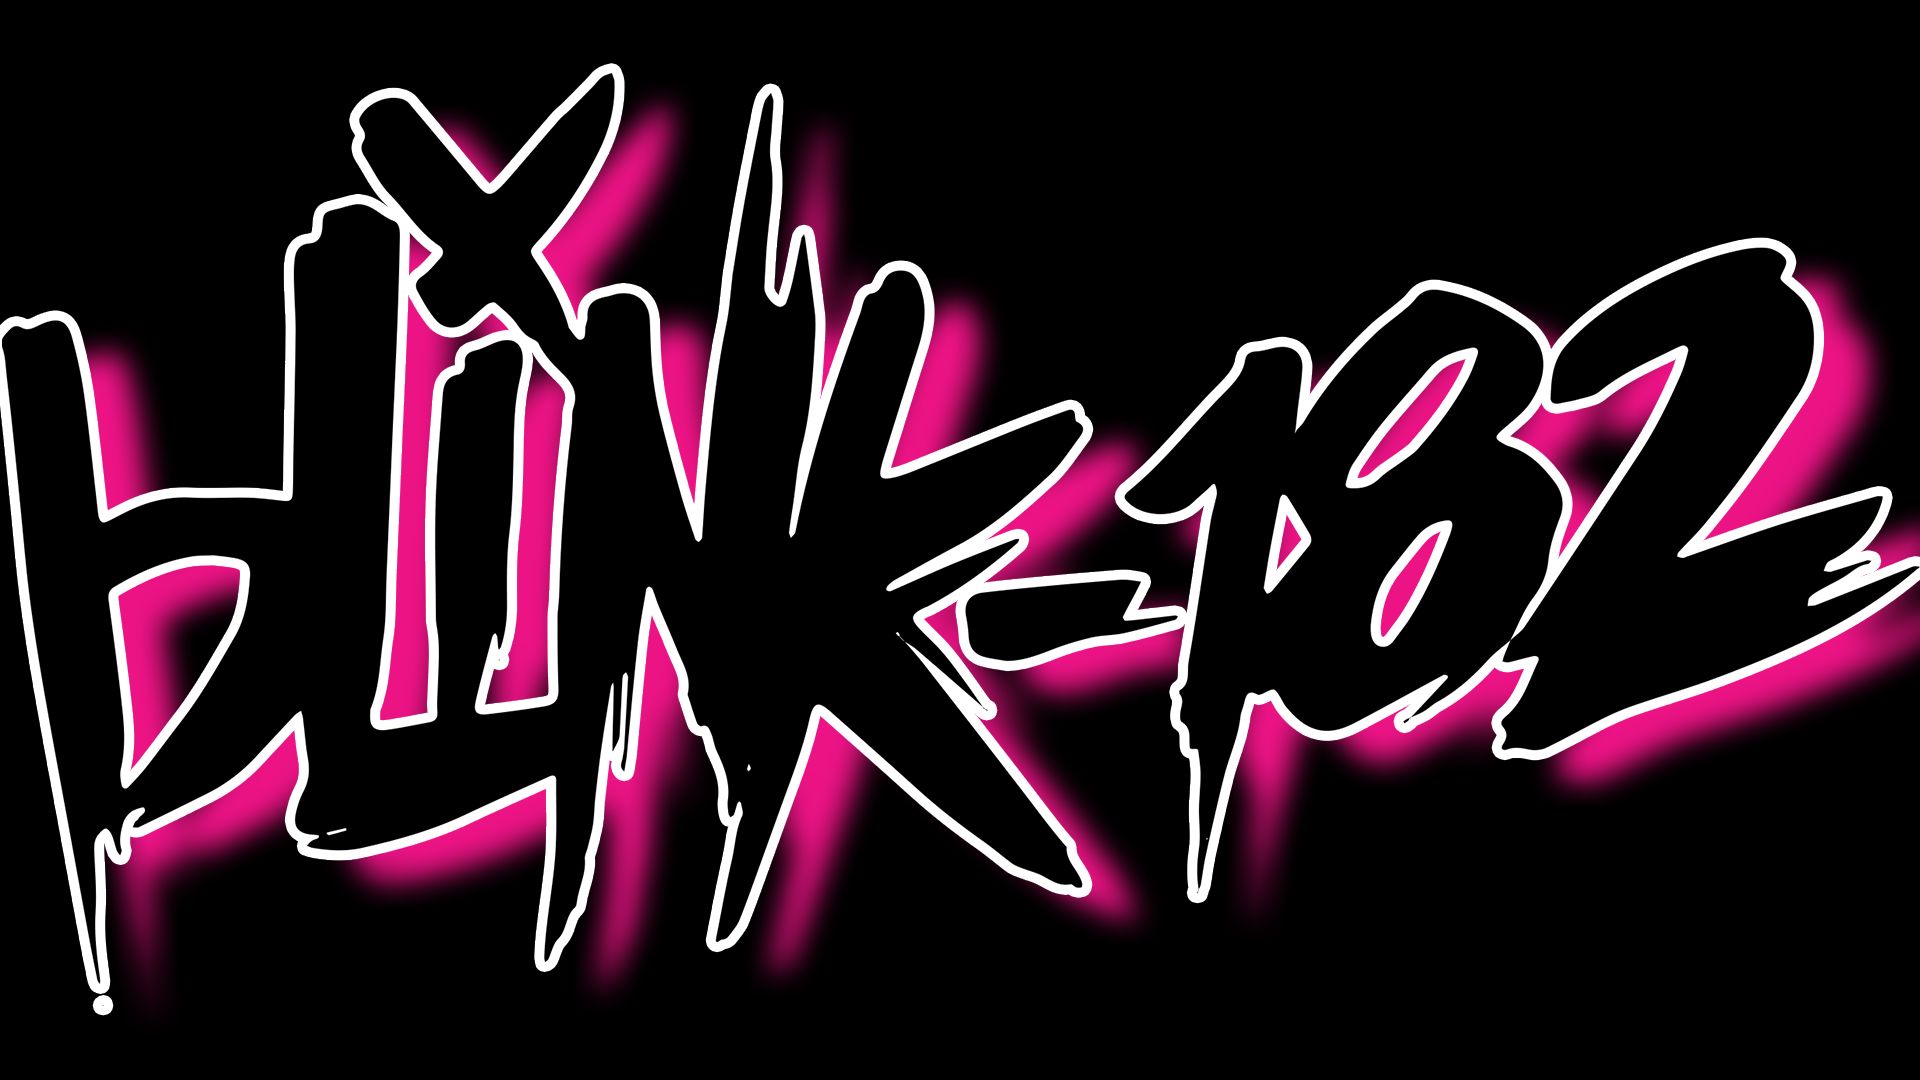 BLINK182 pop punk alternative rock hard blink 182 wallpaper  1920x1080   549210  WallpaperUP